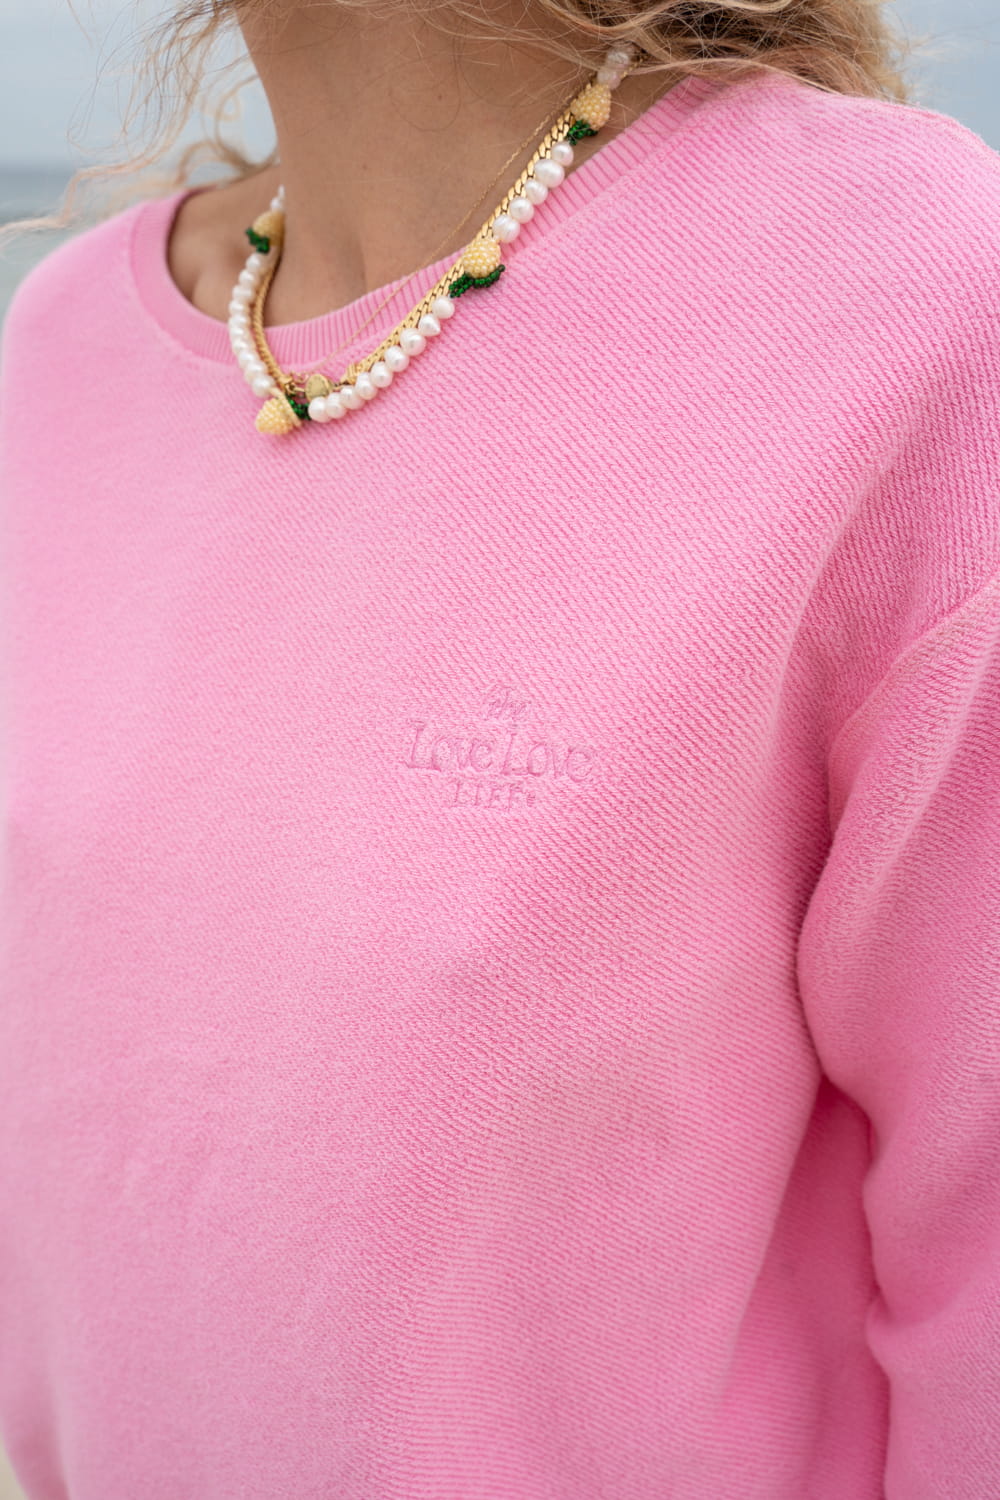 Nuuk Candy Pink sweatshirt